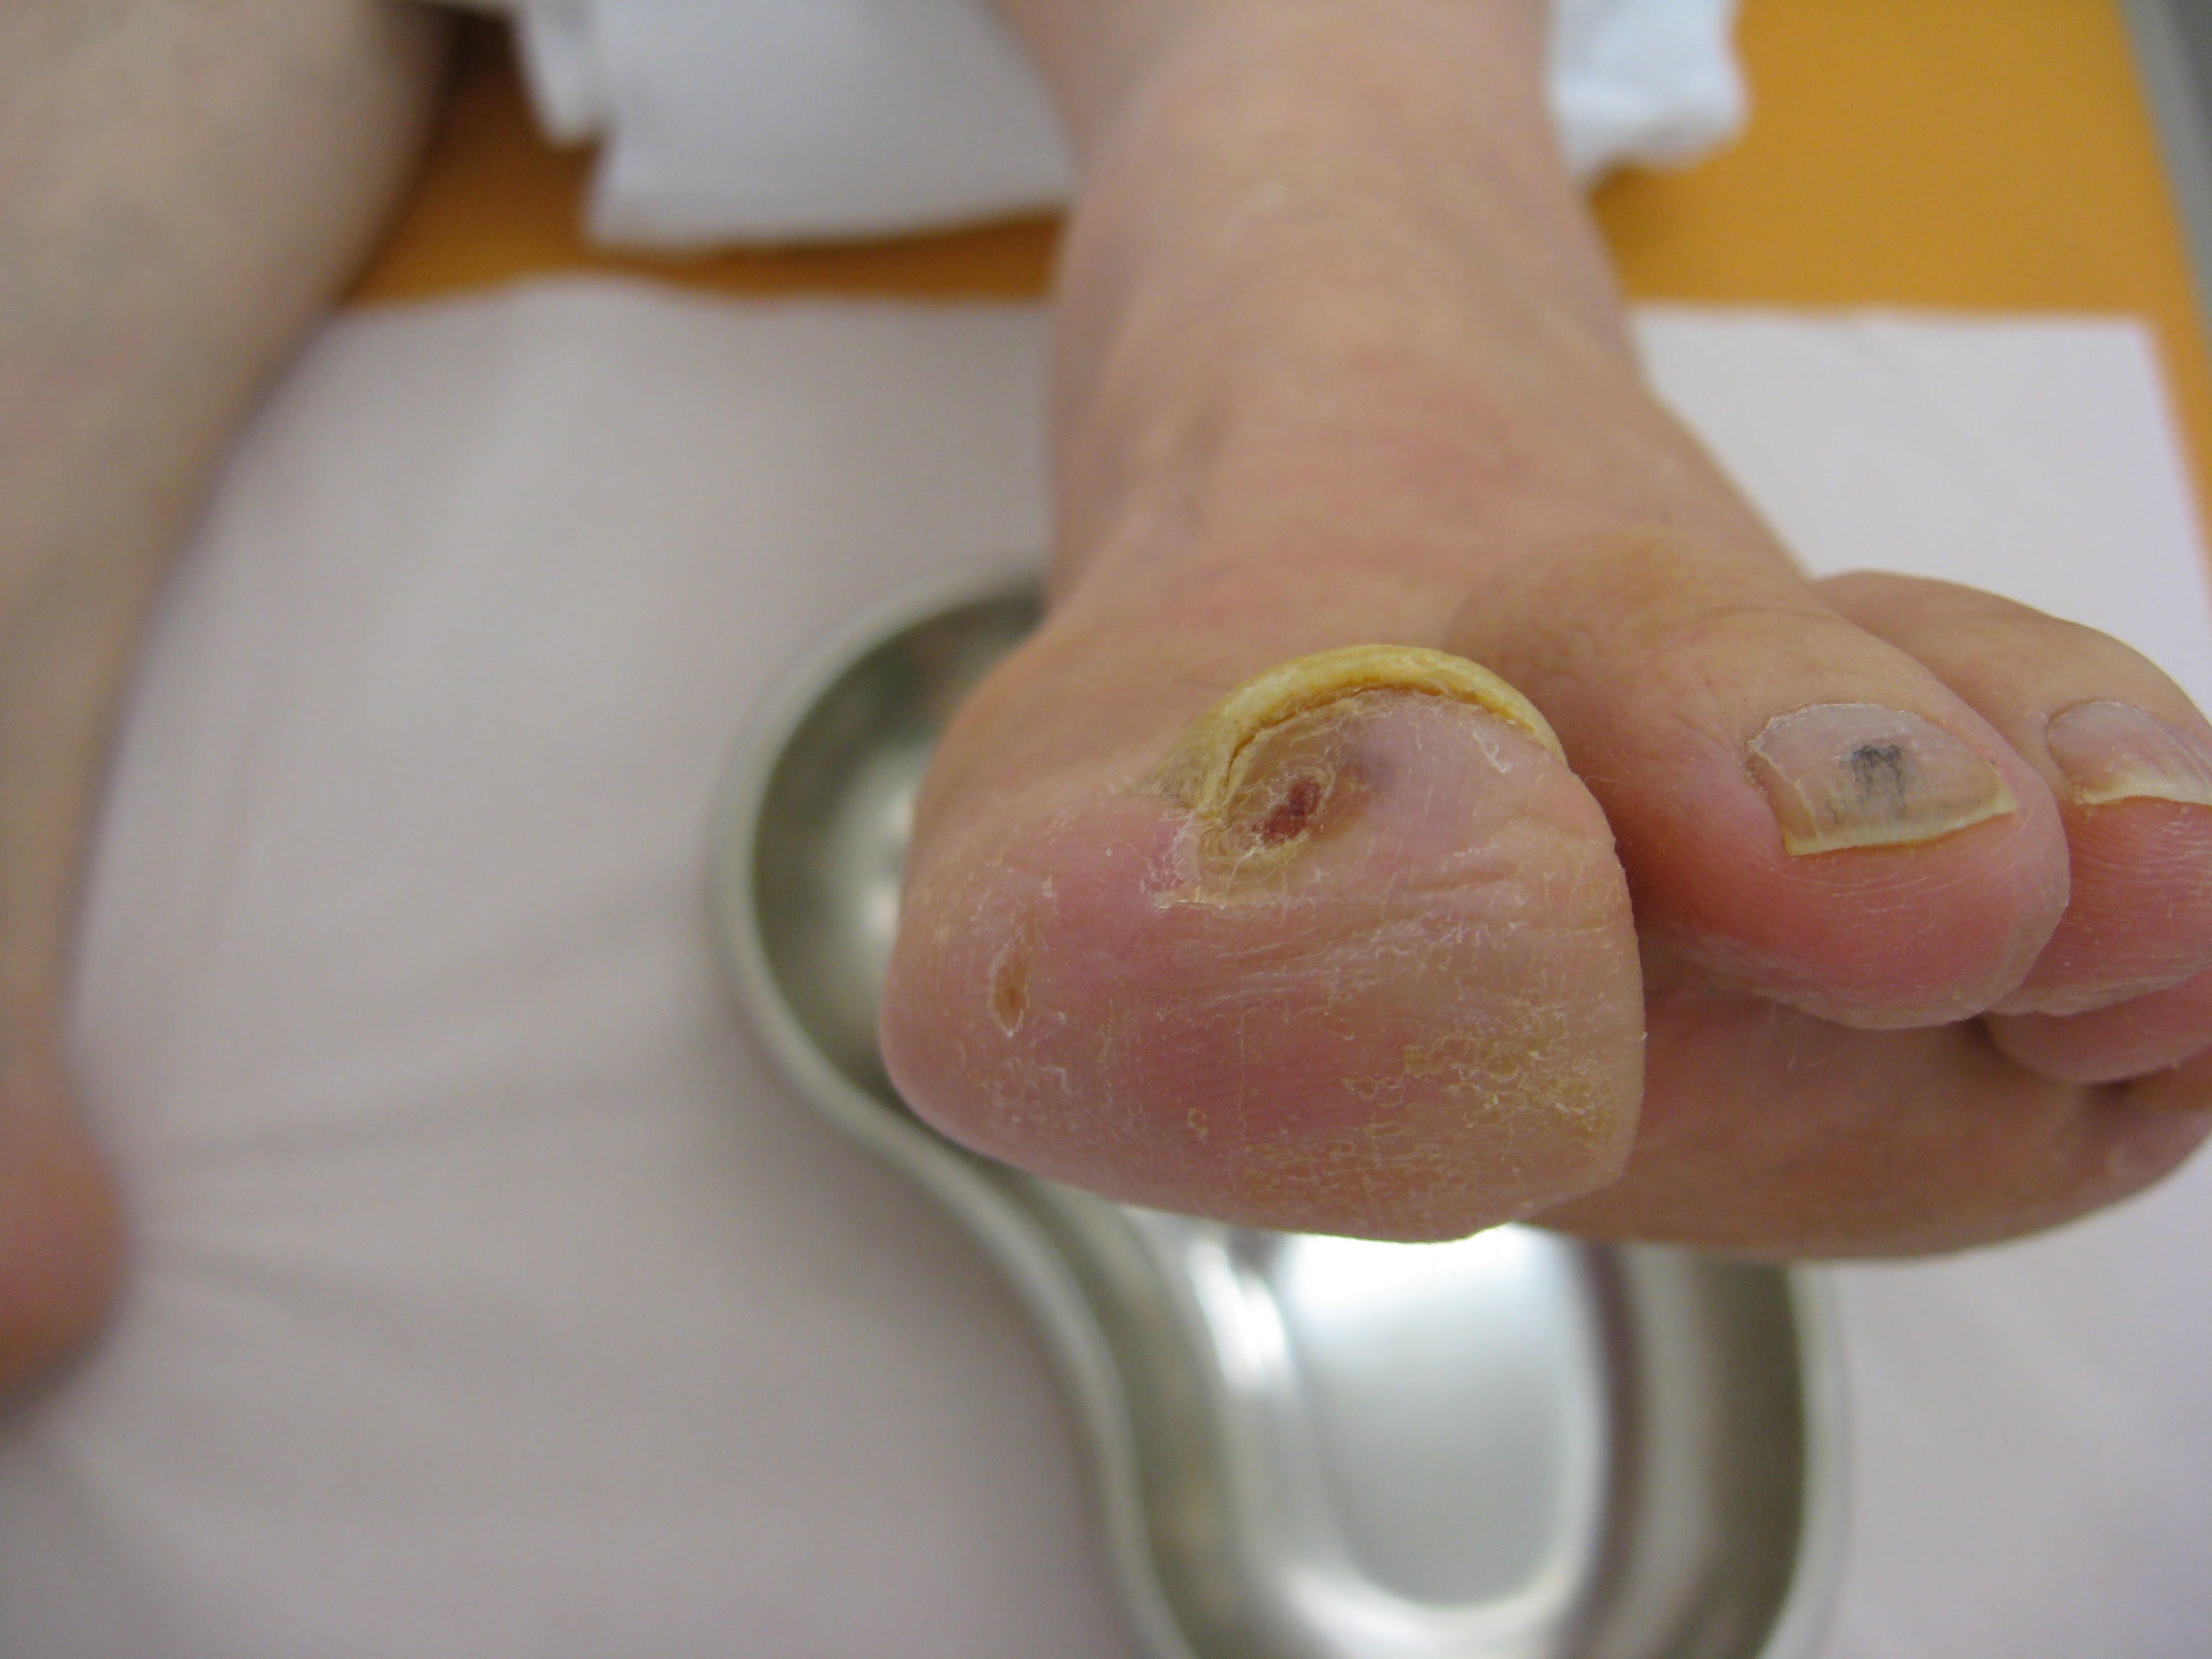 holes-toes-pad-arterial-disease-patient